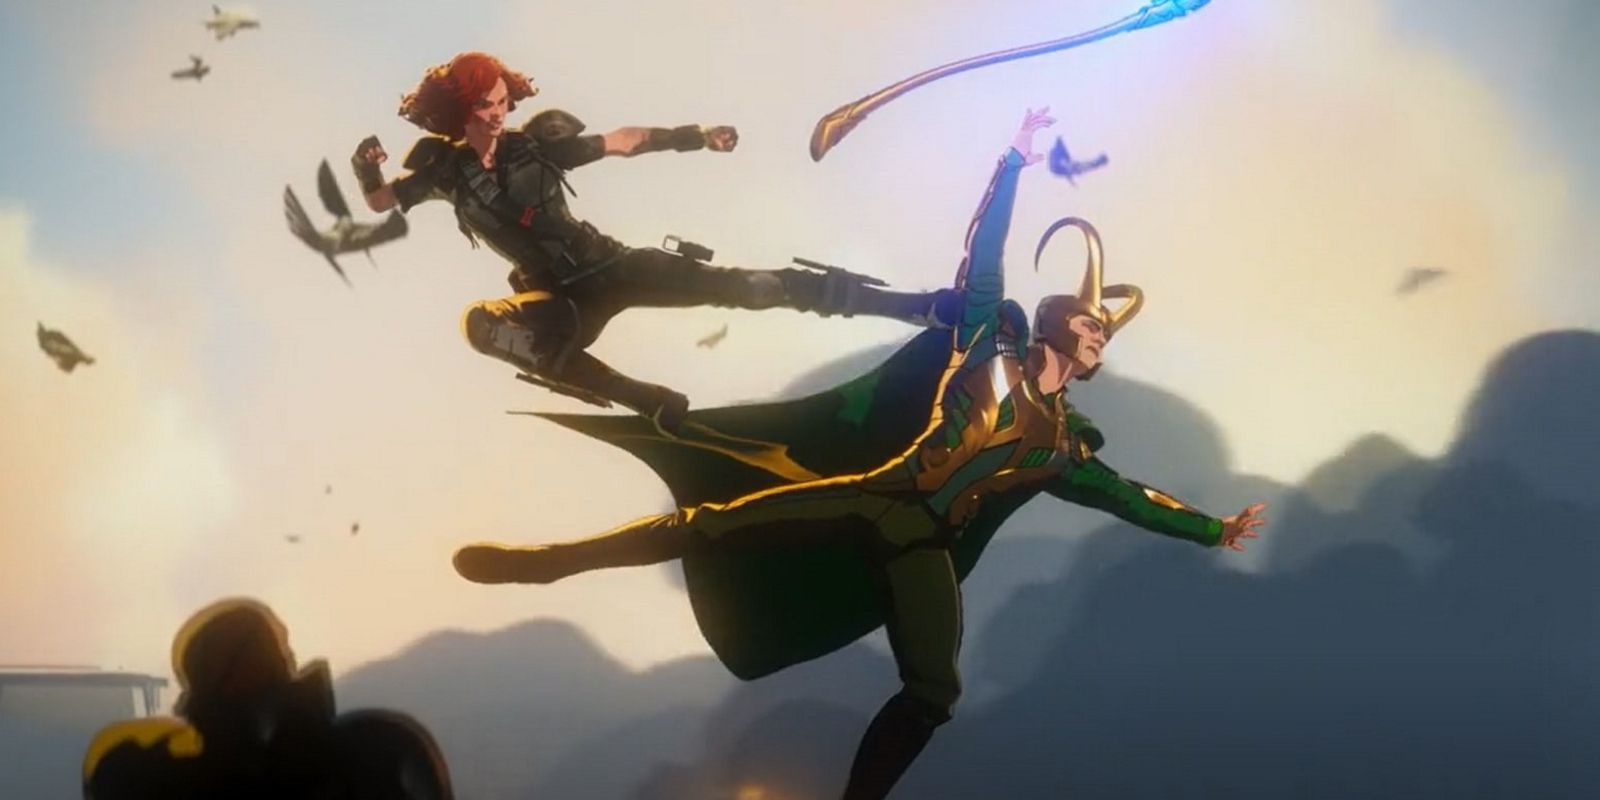 Natasha vs Loki